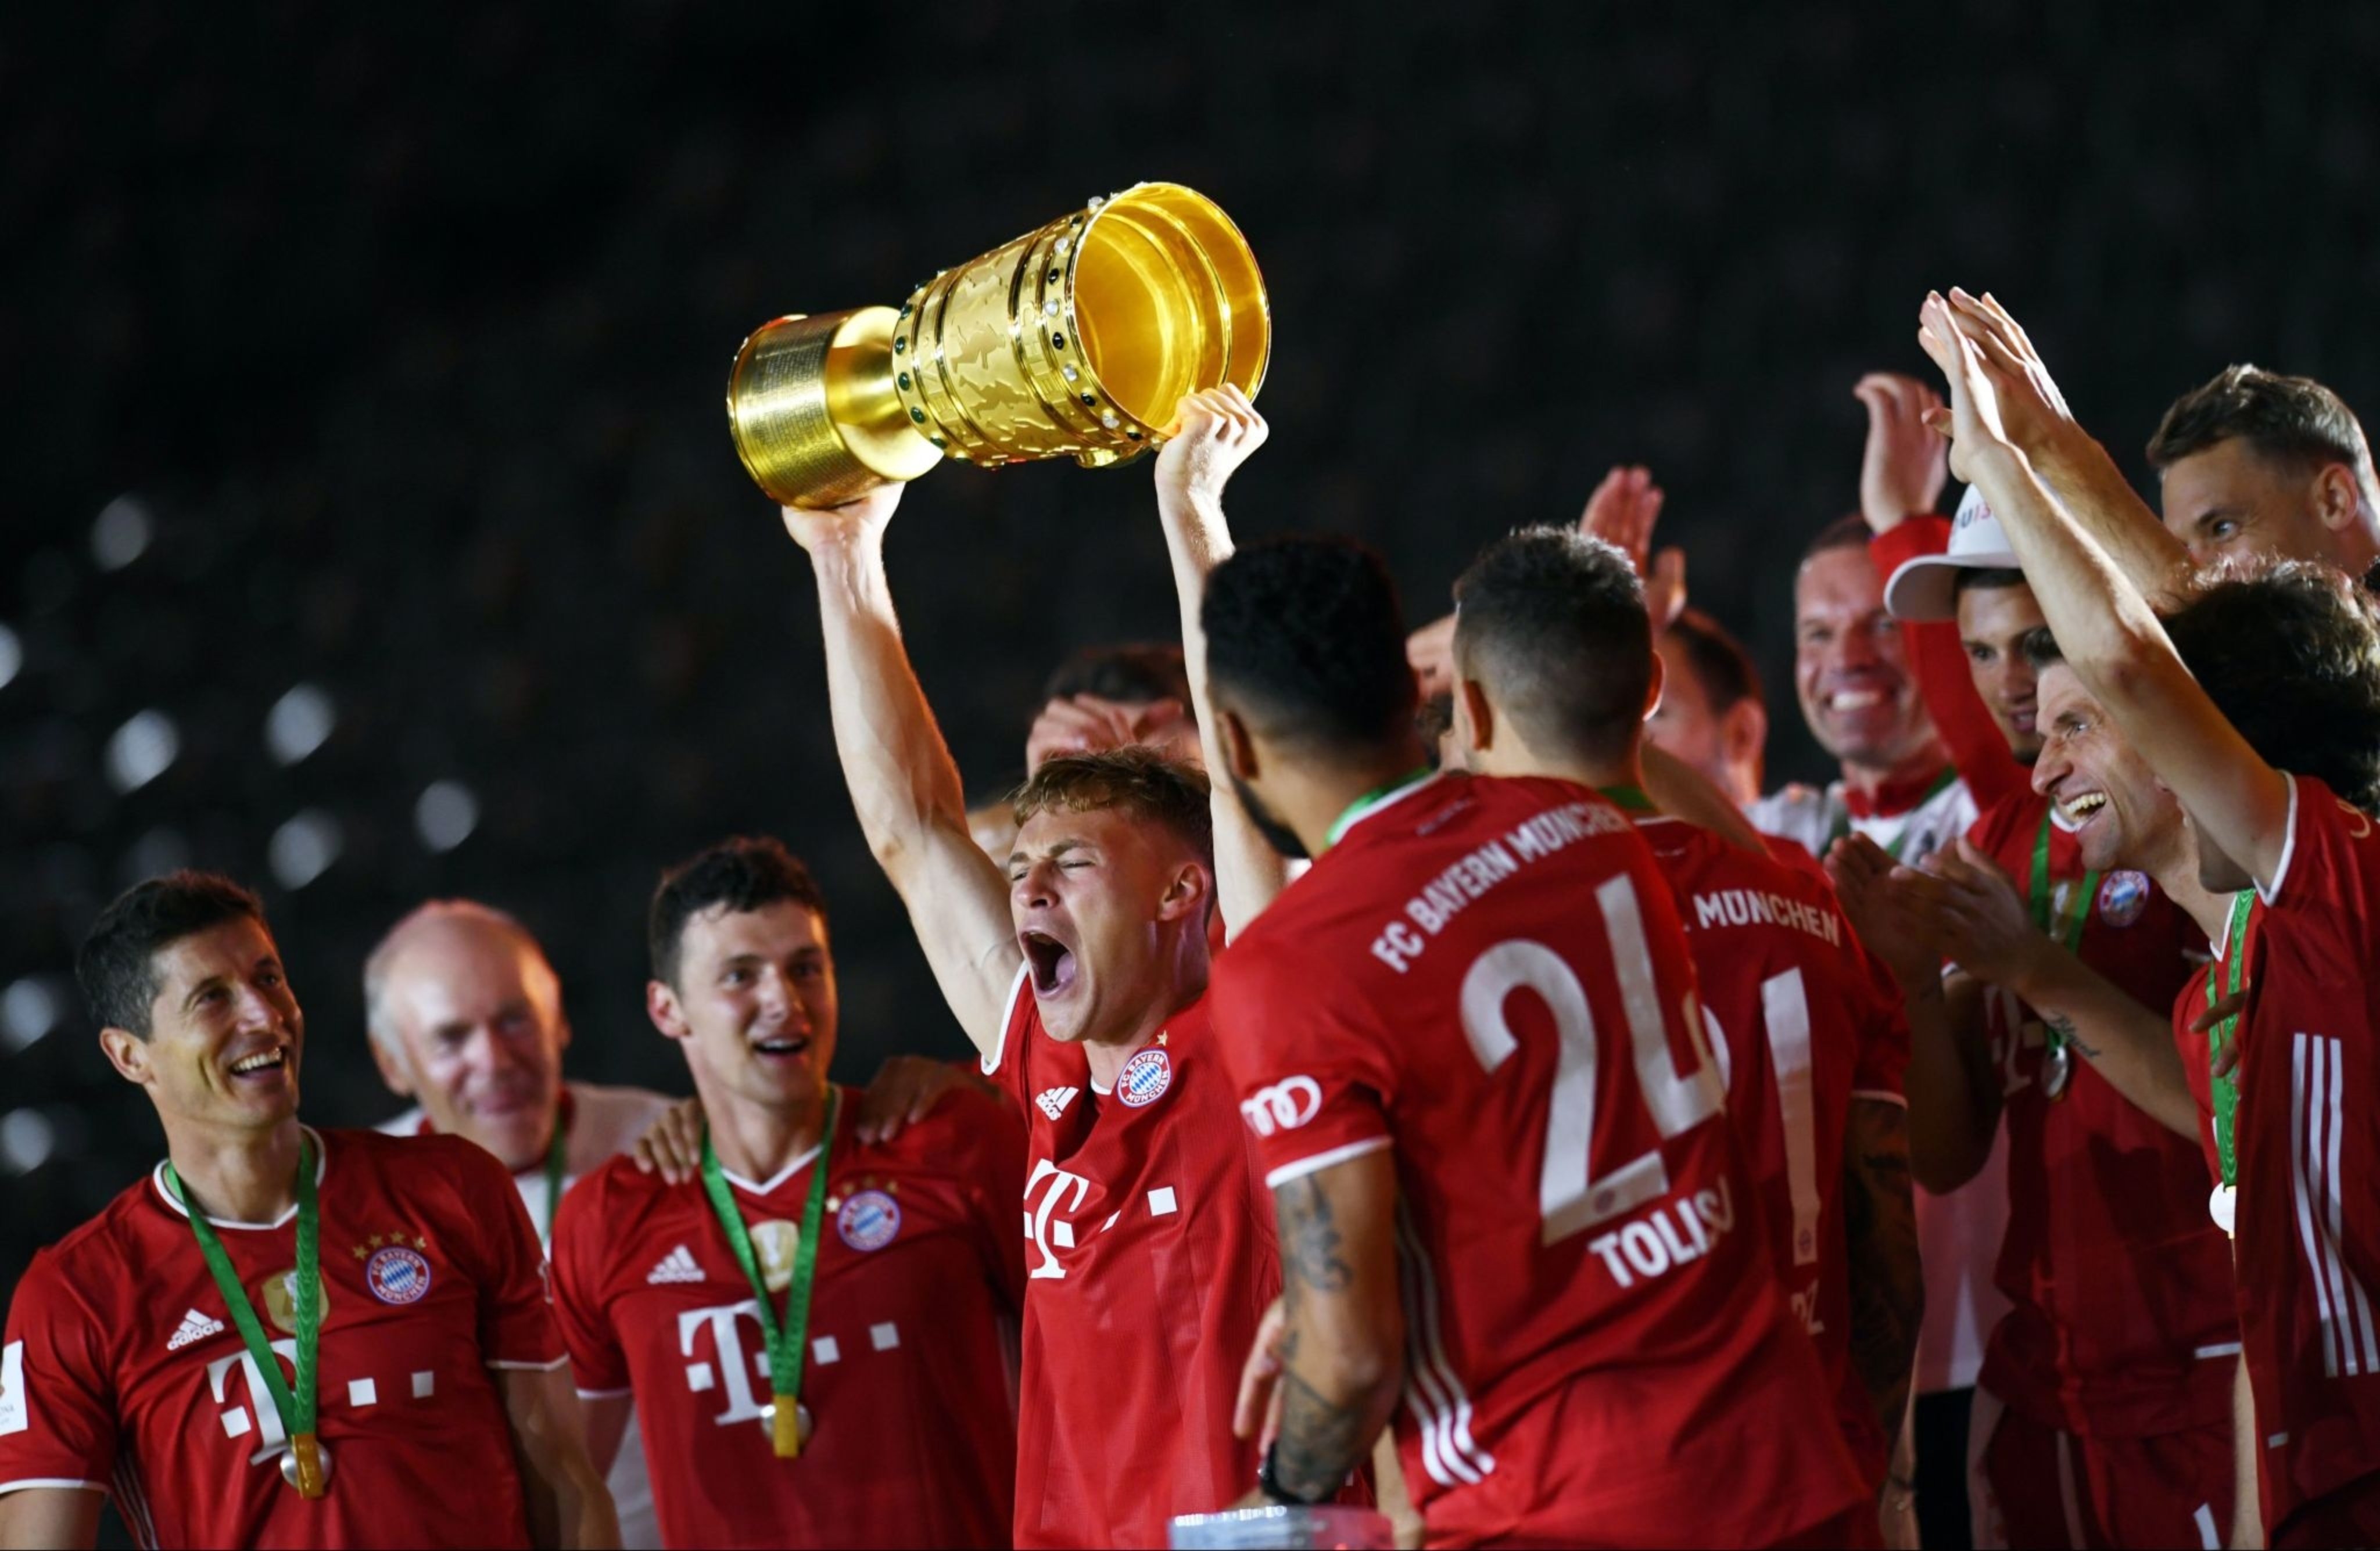 بایرن مونیخ - دی اف بی پوکال - Bayern Munich - DFB Pokal